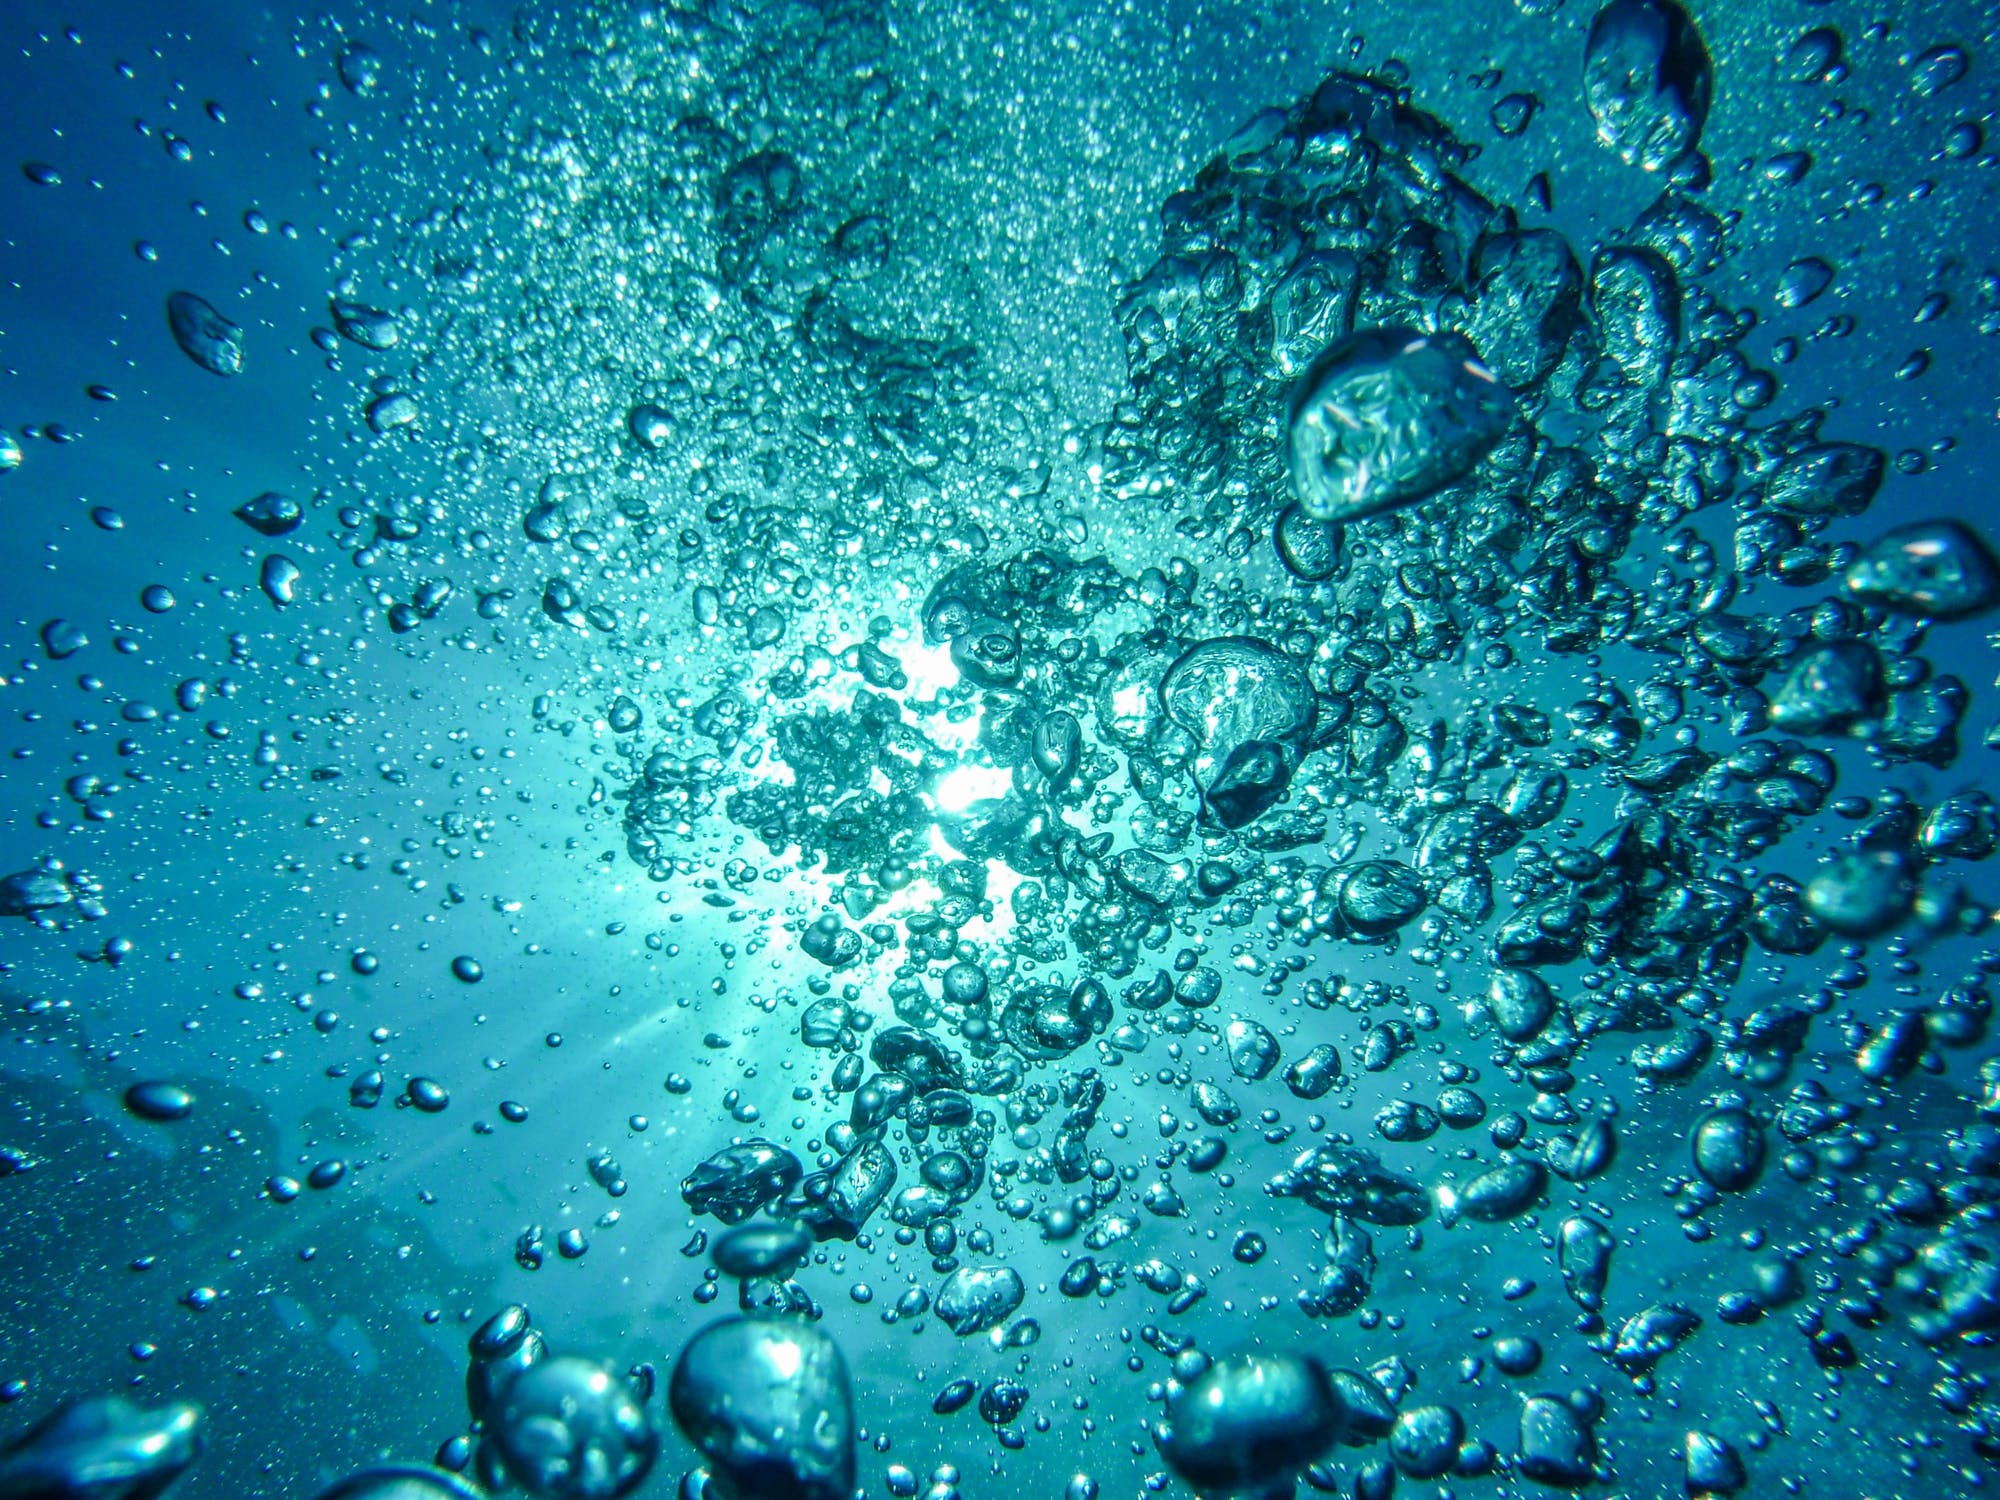 Veszprémi kutatók egy új fejlesztése a rejtett vízszennyezést is kimutatja